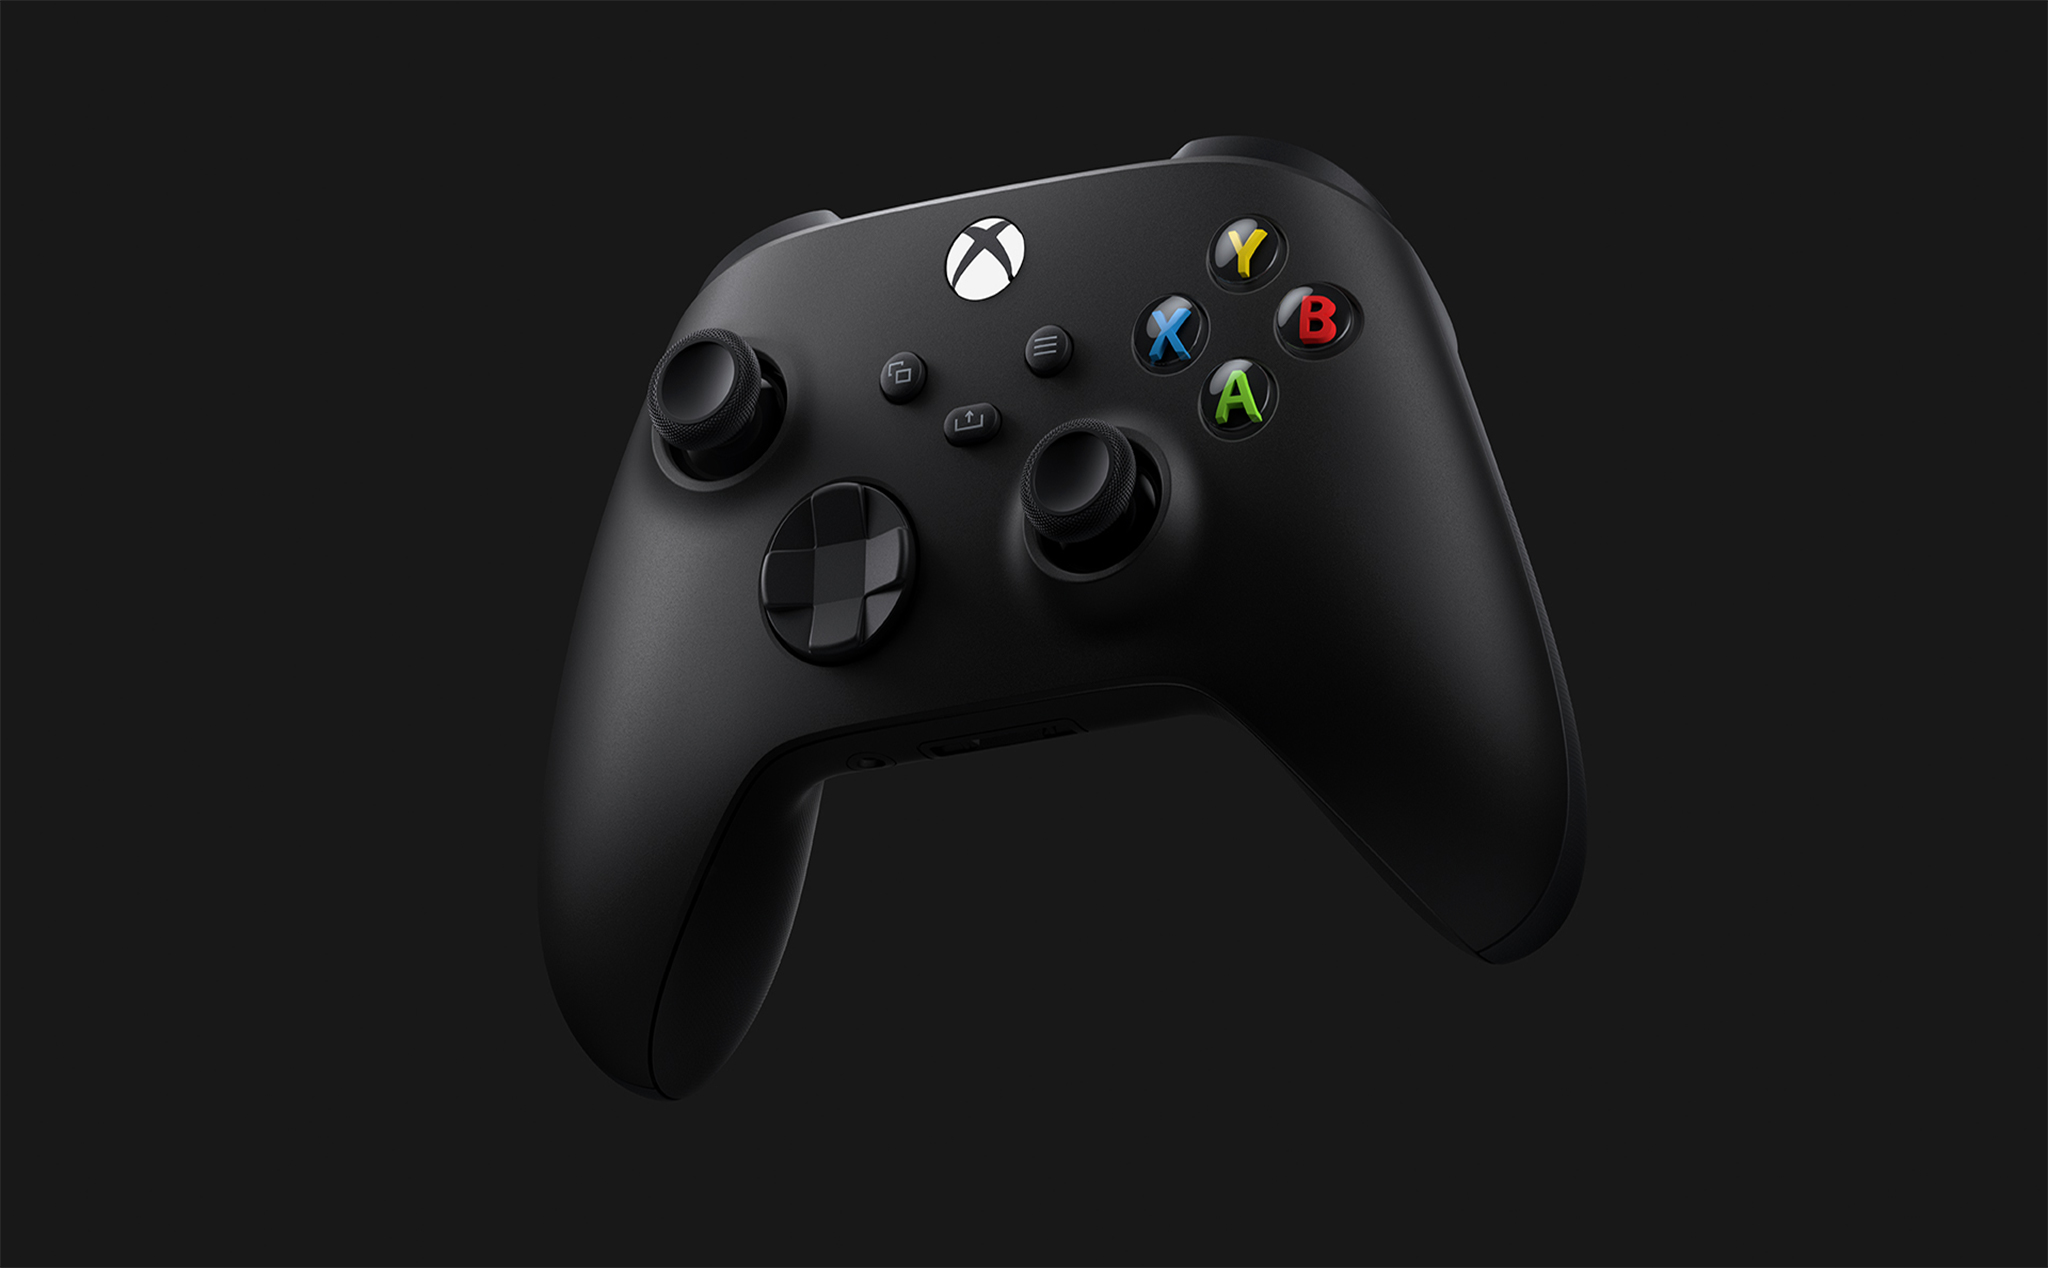 Tay cầm Xbox Series X sắp được hỗ trợ chơi game trên iPhone, iPad